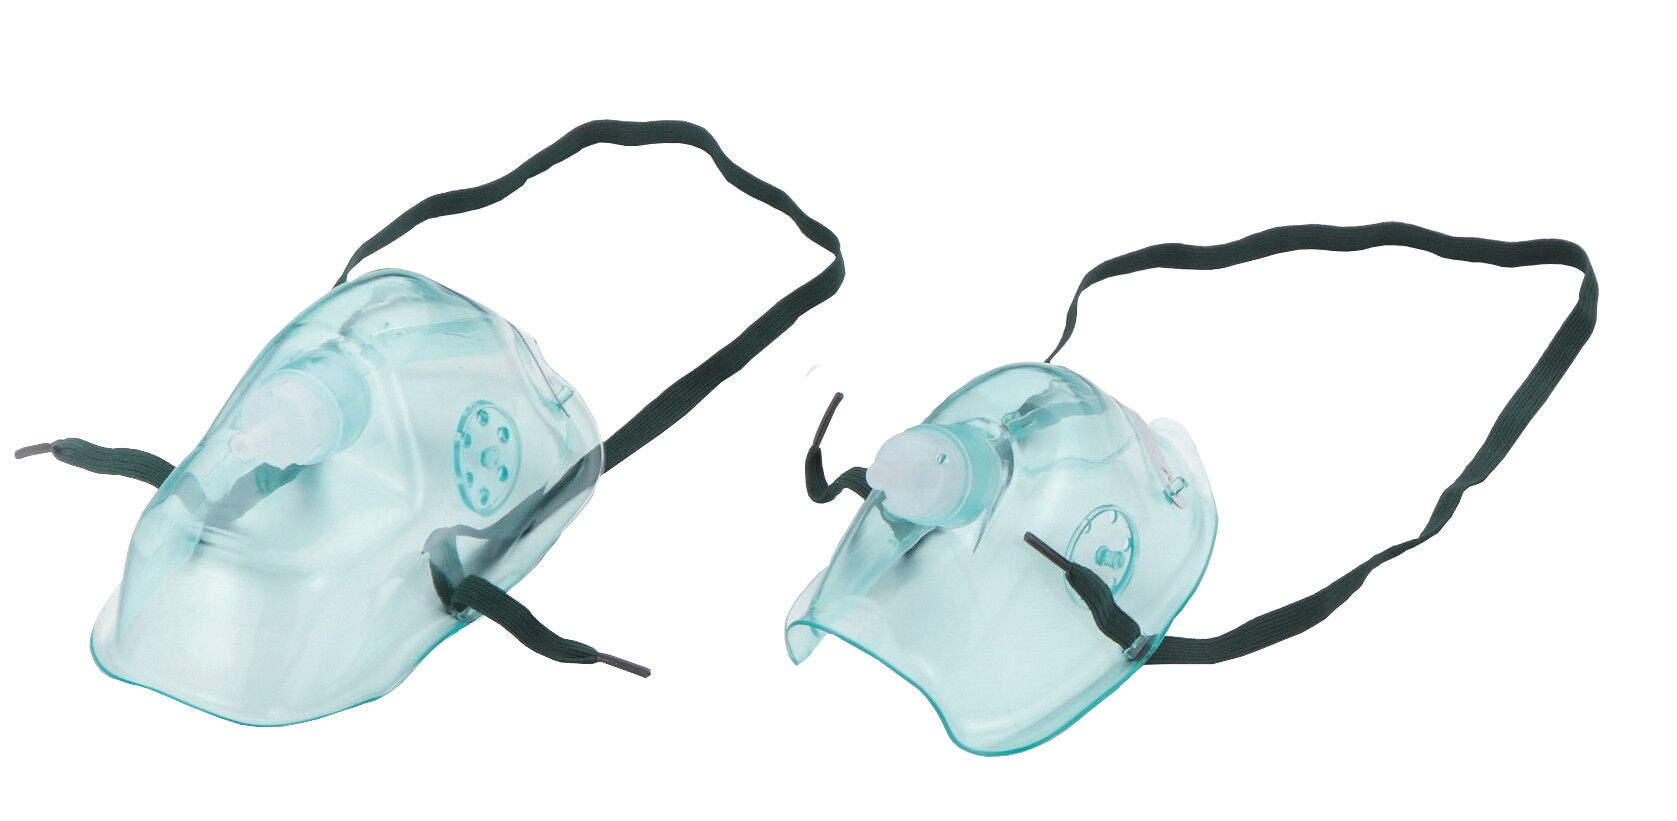 Vincal Maschera per ossigenoterapia in PVC con tubo da mt. 2 - con elastico regolabile e clip stringinaso - Adulti/Bambini